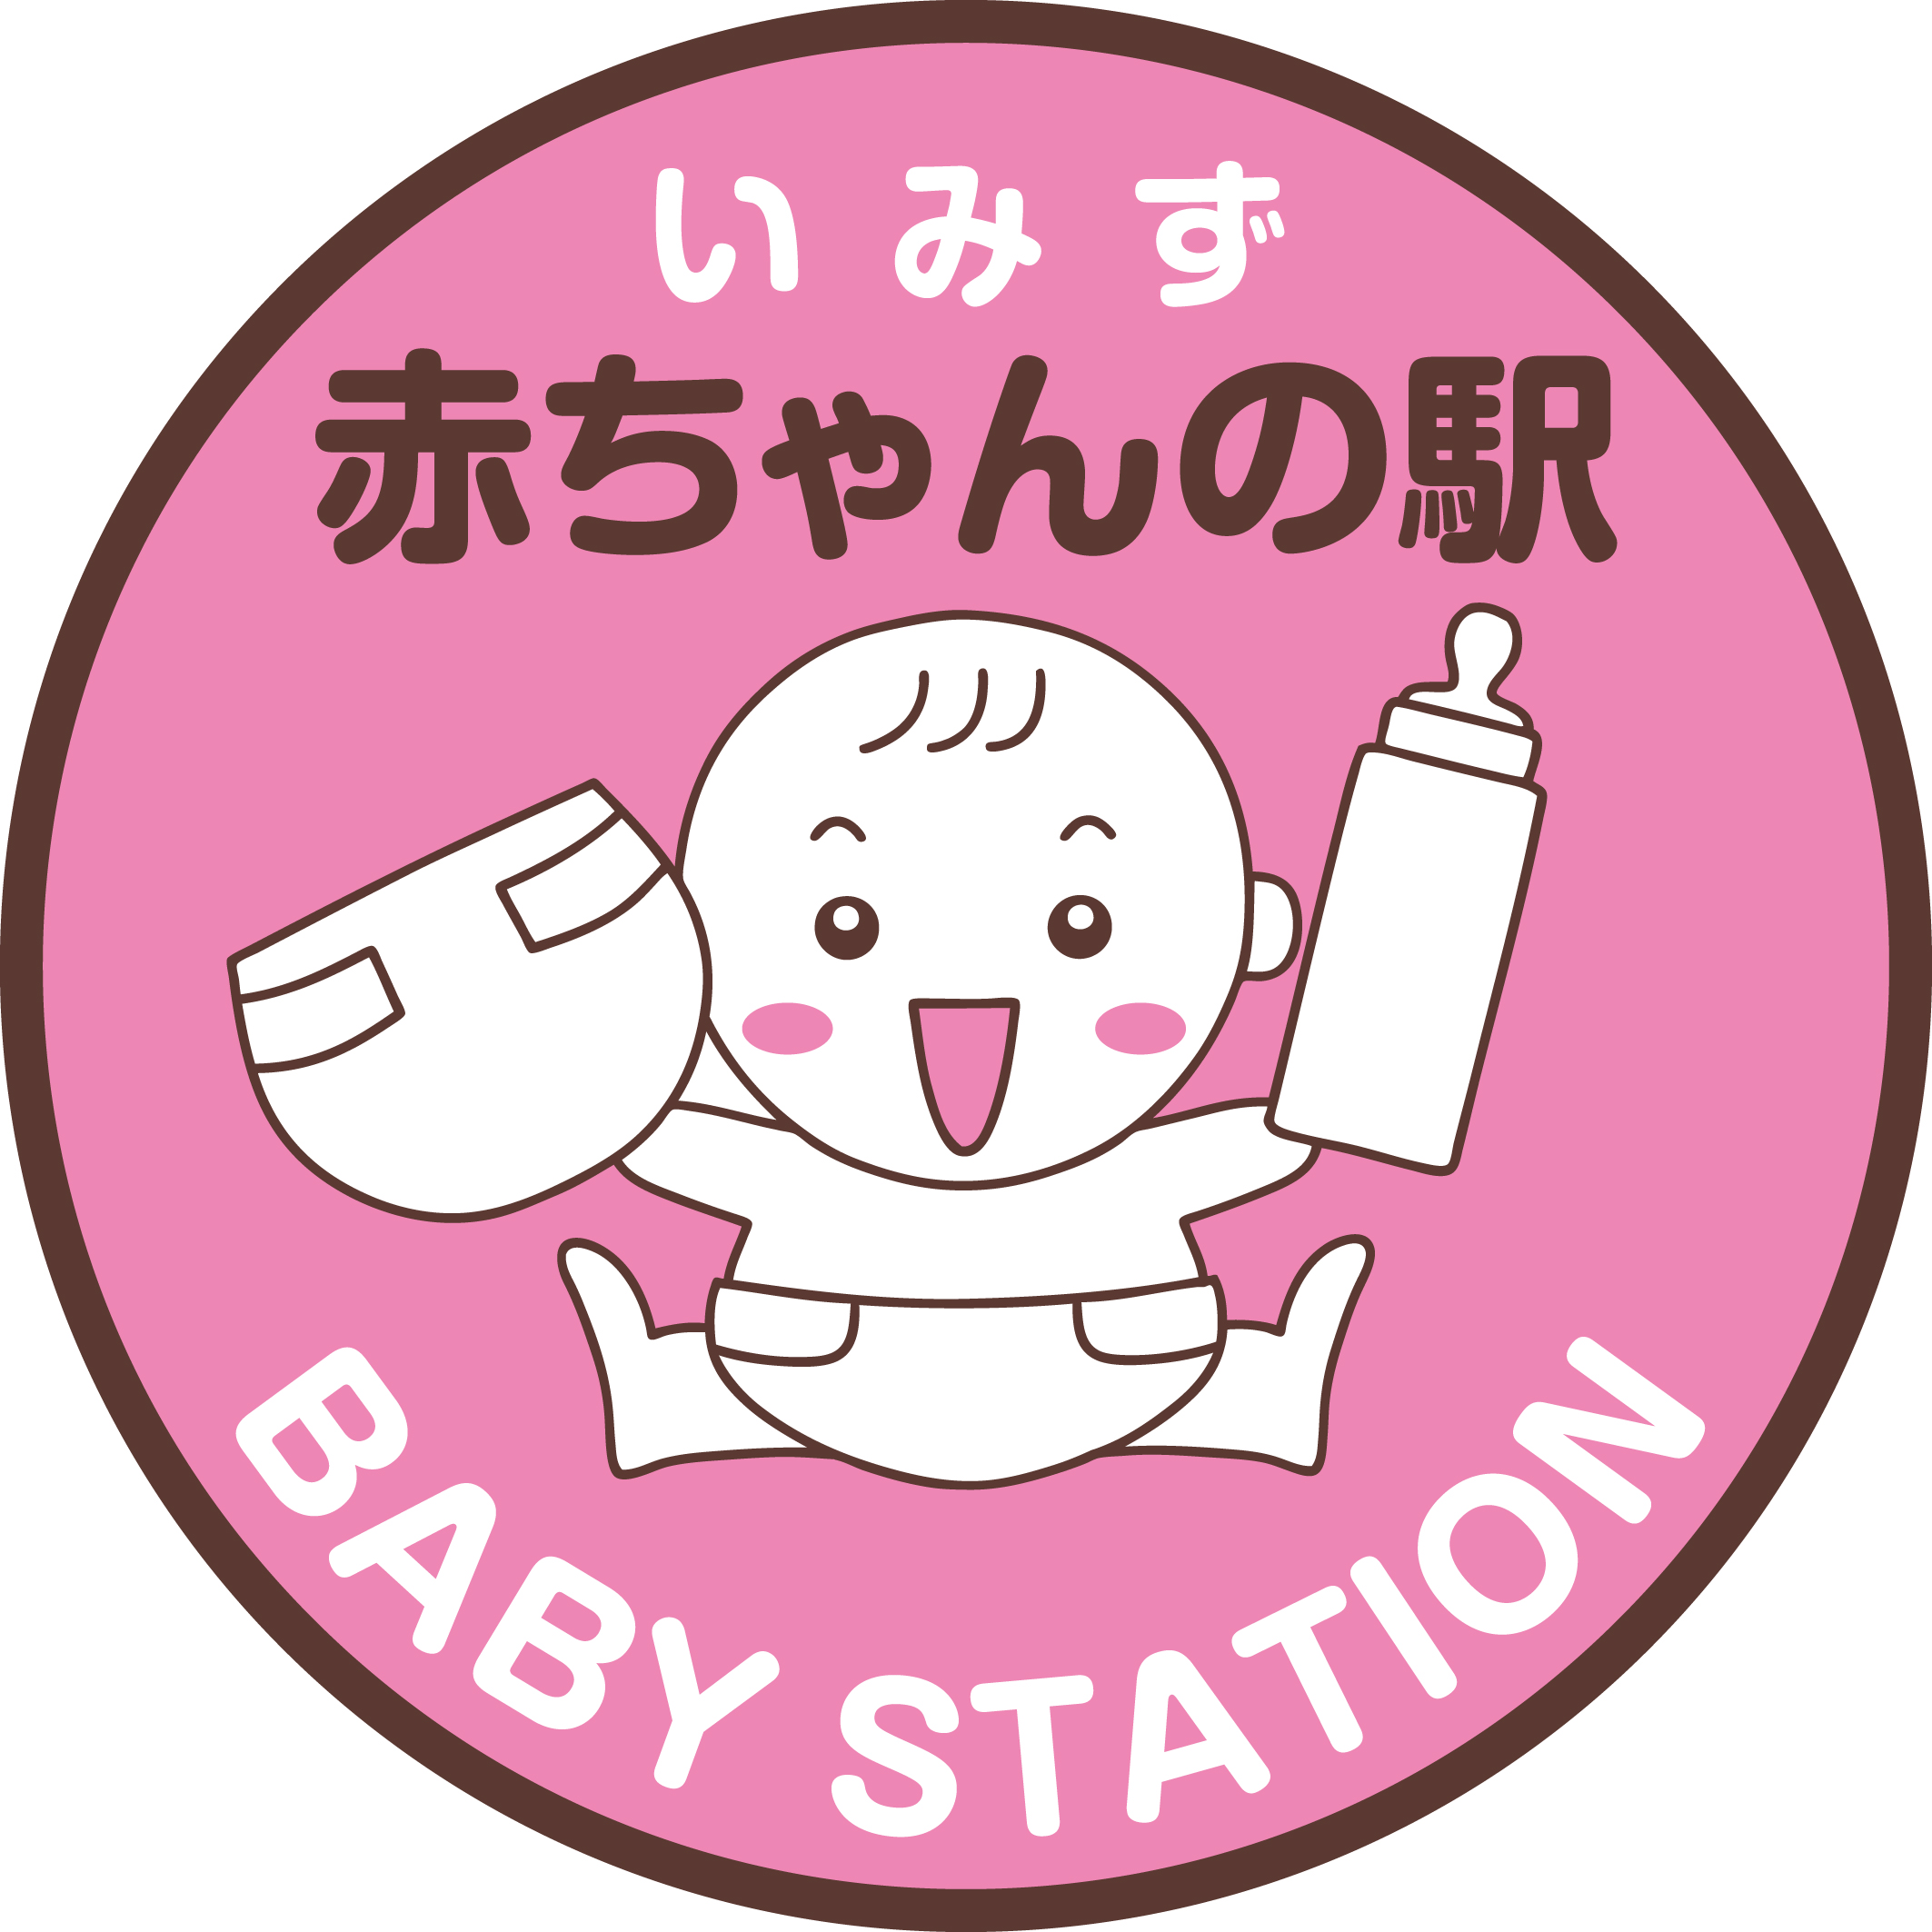 射水市 赤ちゃんの駅